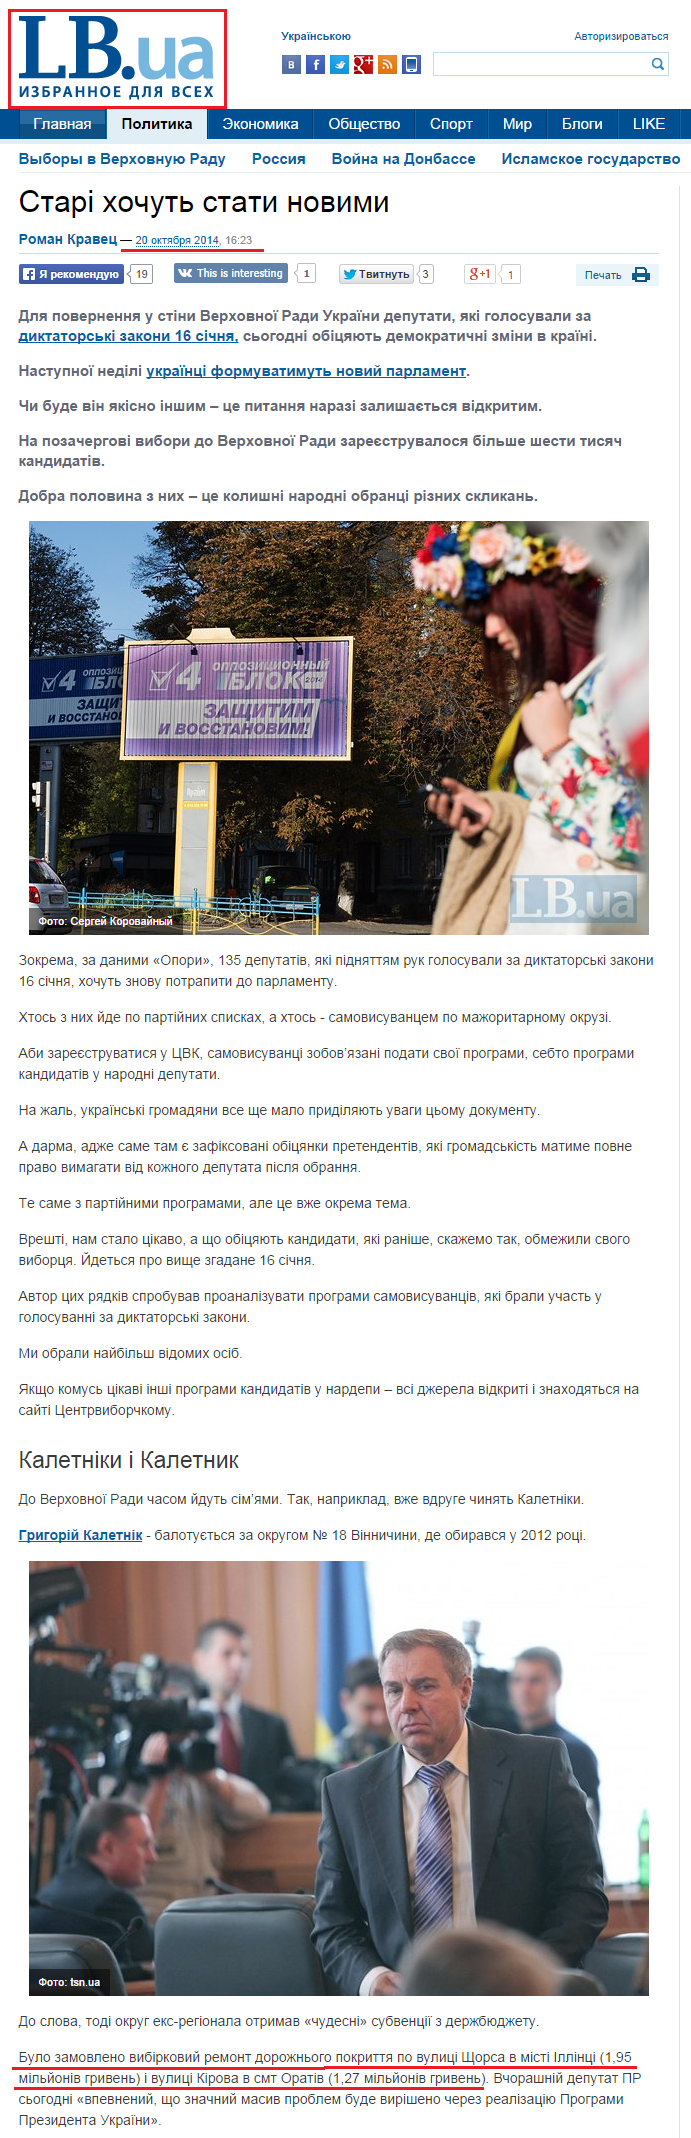 http://lb.ua/news/2014/10/20/283157_stari_hochut_stati_novimi.html